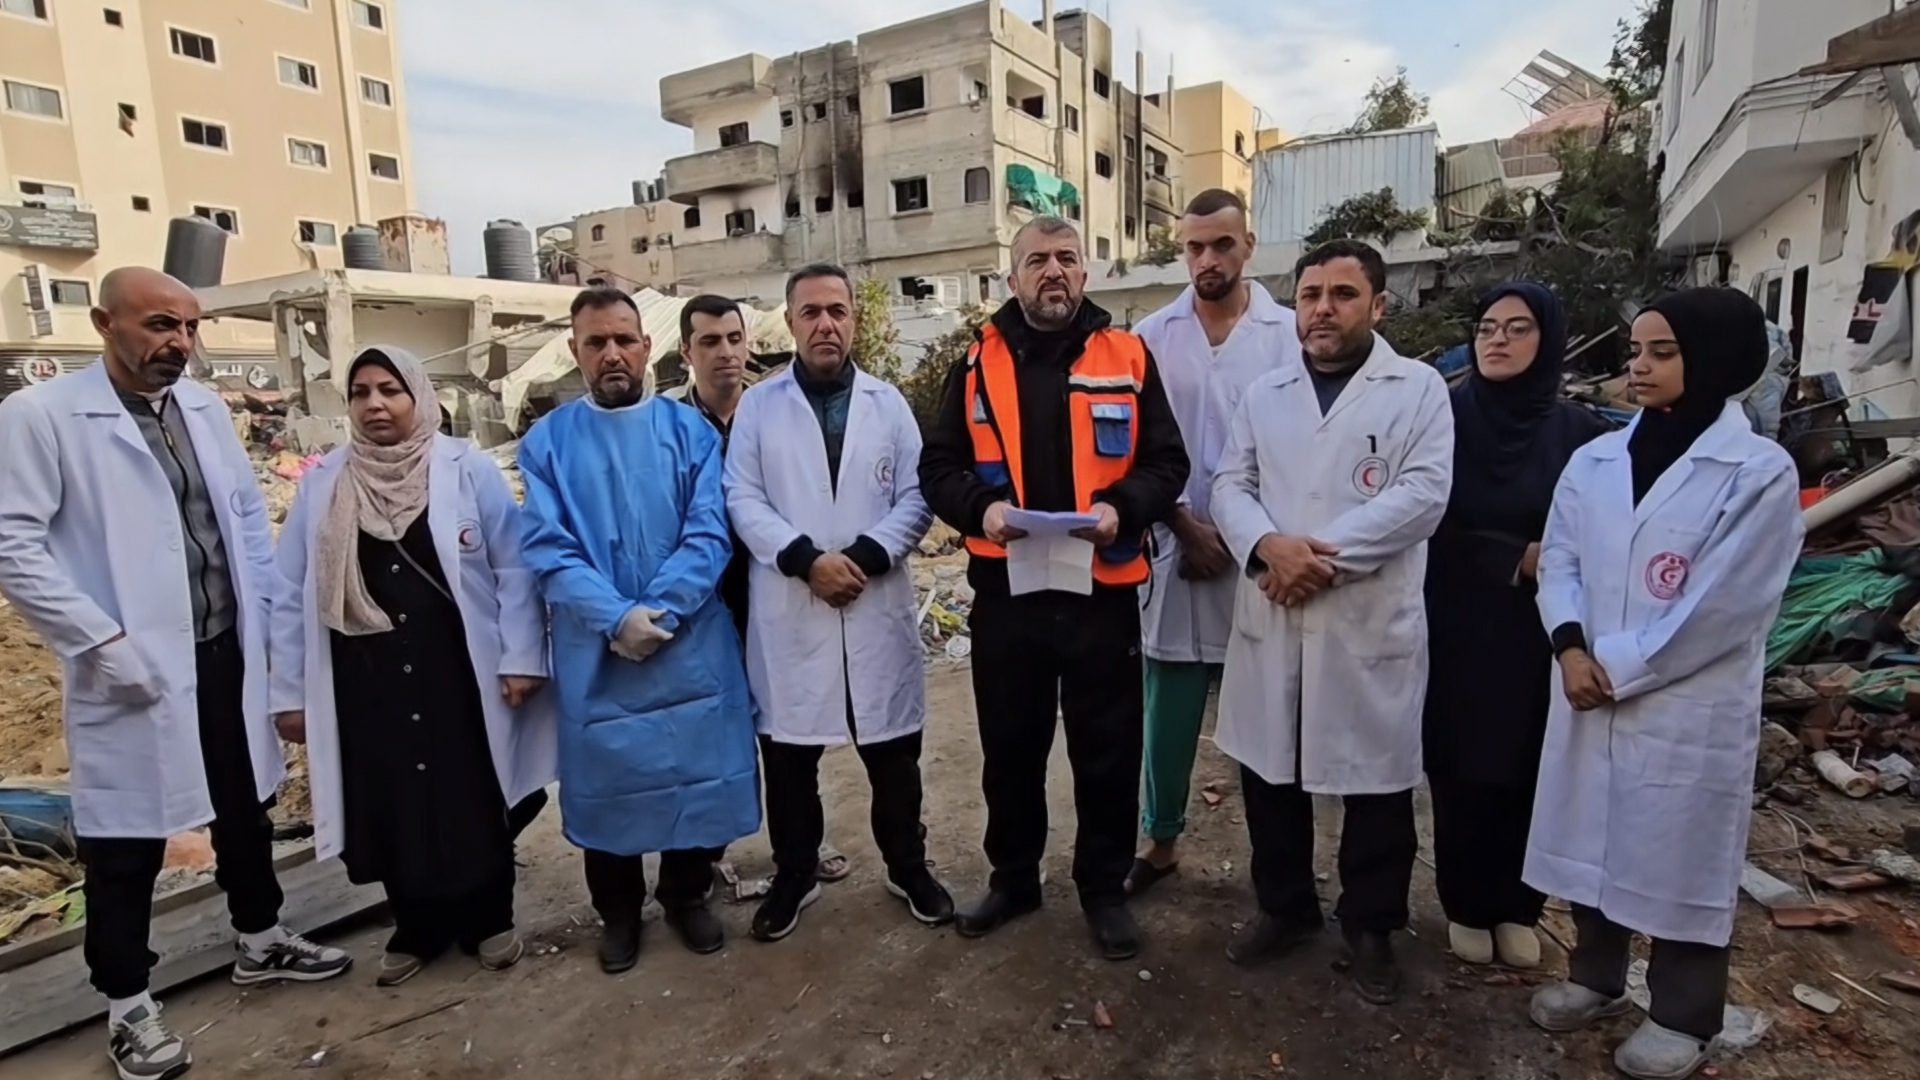 البوكس نيوز توثق استهداف مؤتمر صحفي لوزارة الصحة بمستشفى كمال عدوان في غزة | البرامج – البوكس نيوز